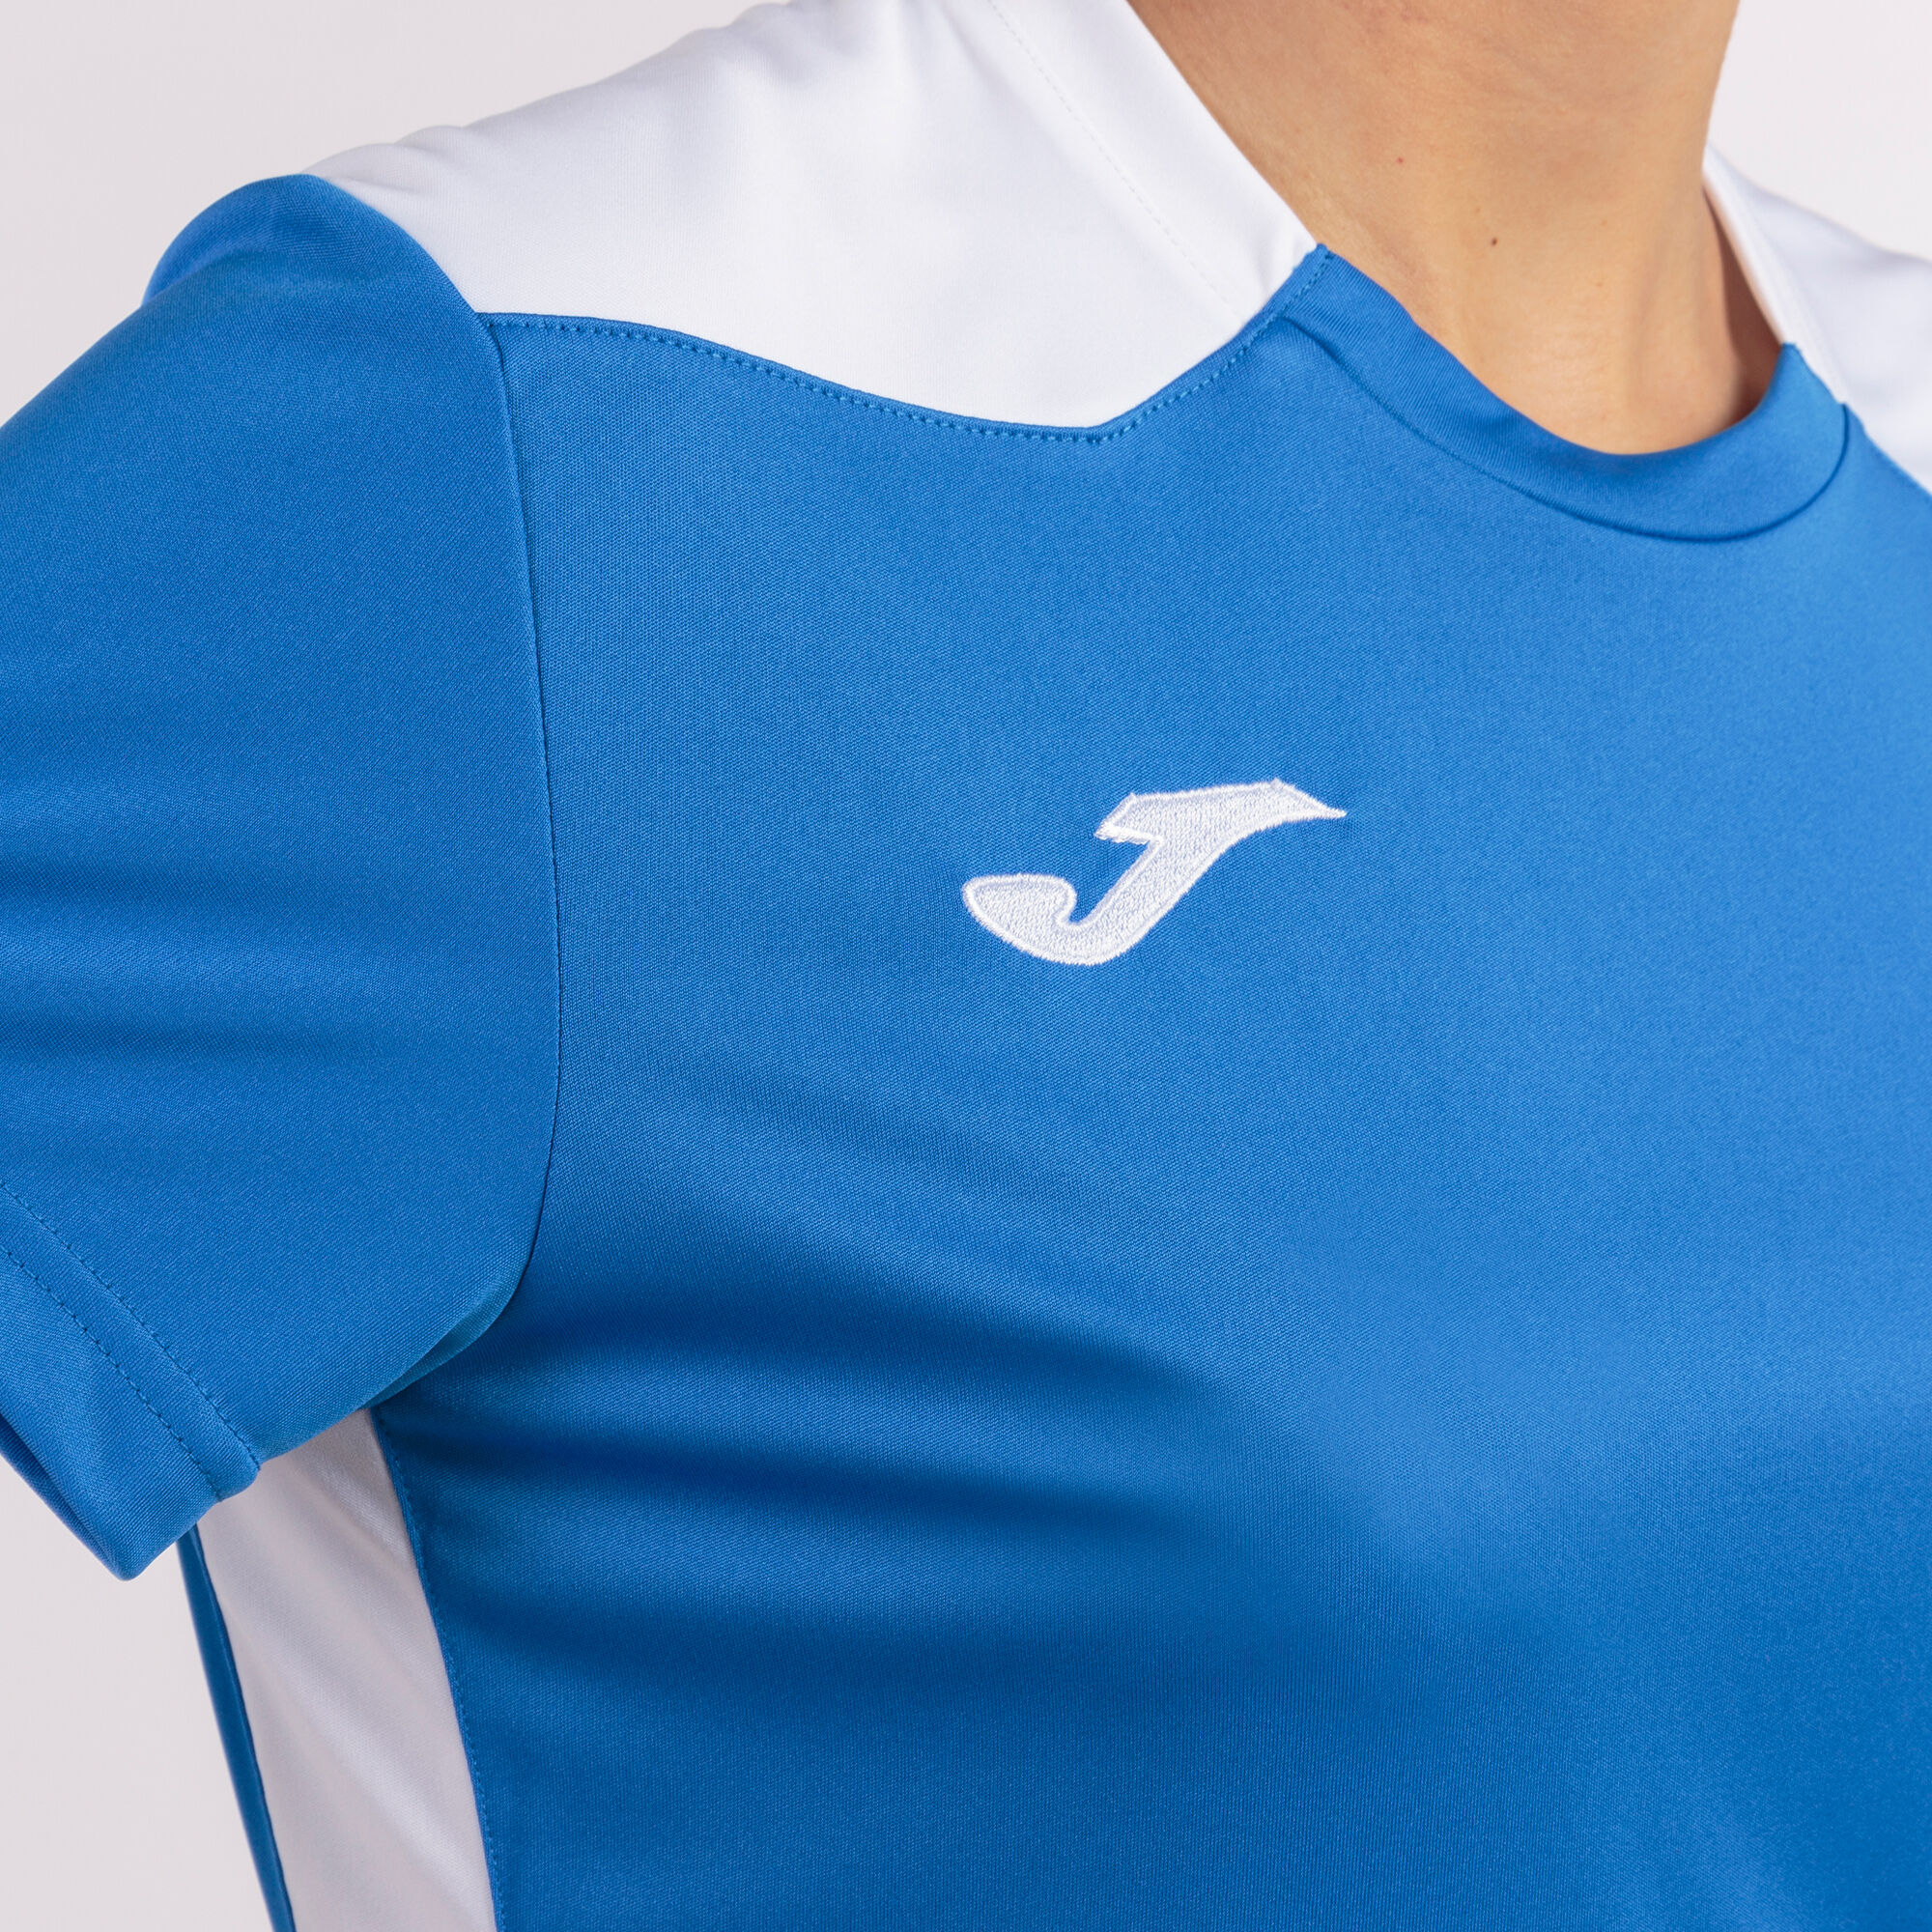 Koszulka z krótkim rękawem kobiety Championship VI niebieski royal bialy